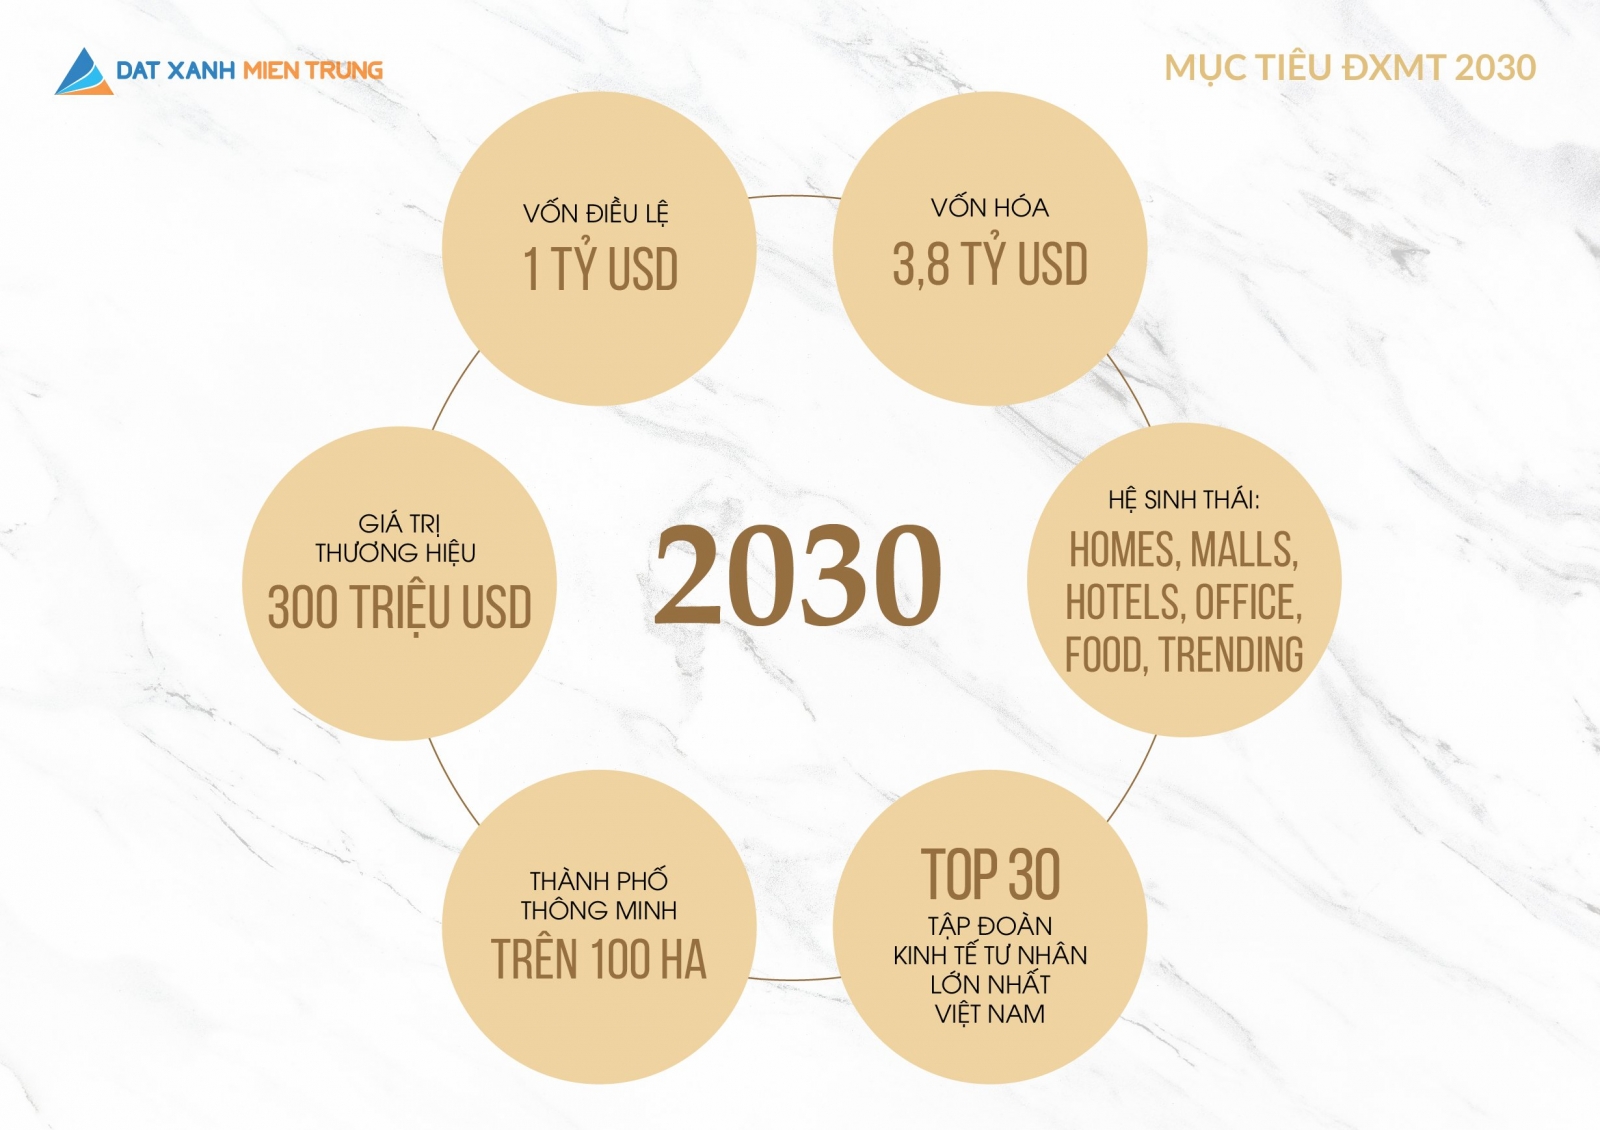 Đất Xanh Miền Trung công bố chiến lược 10 năm: 'Vốn điều lệ đạt 1 tỷ USD năm 2030'